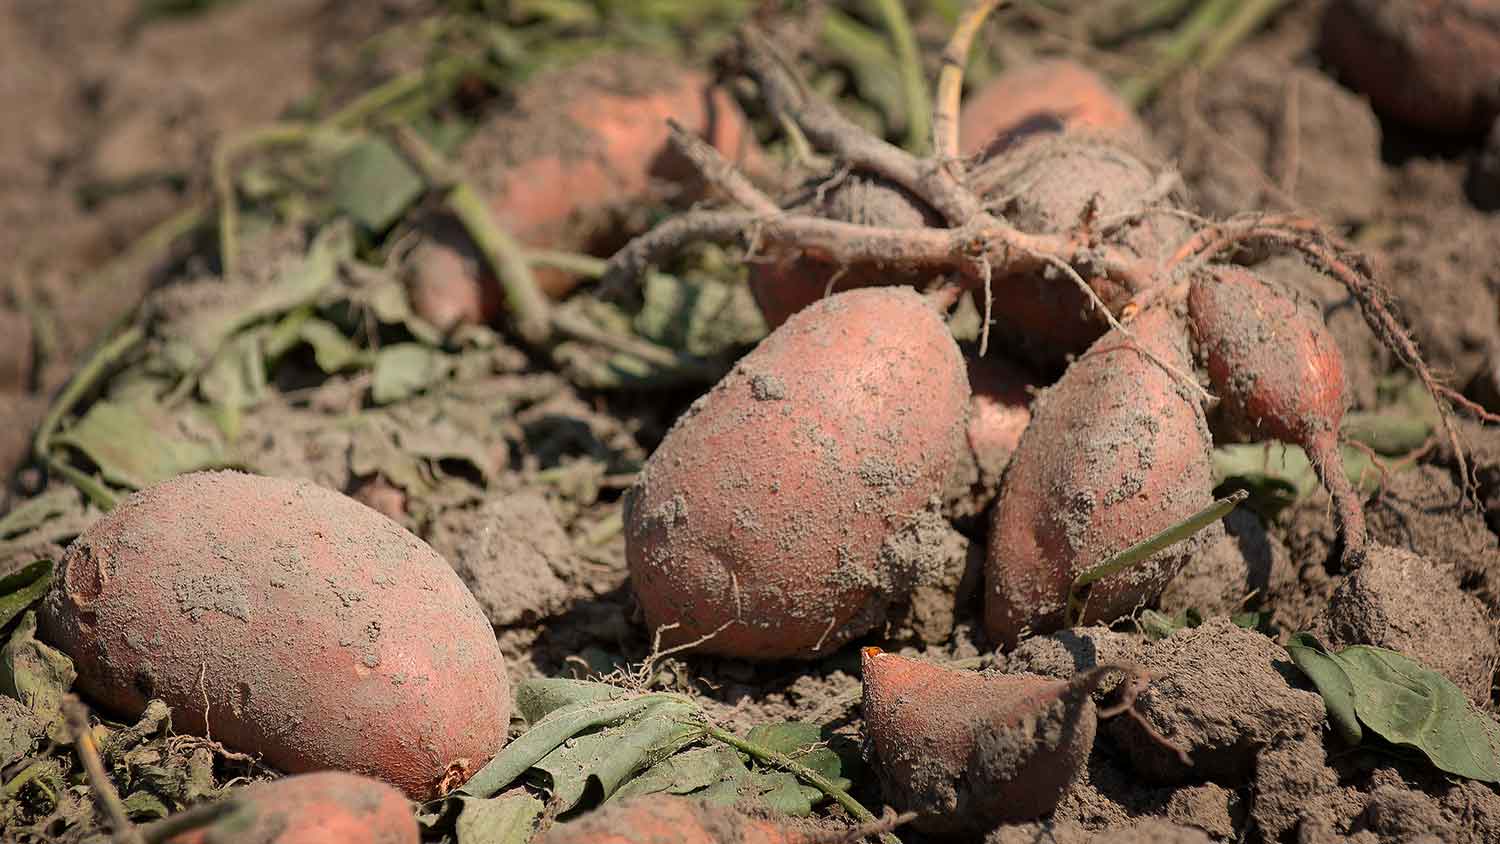 sweetpotatoes in the field